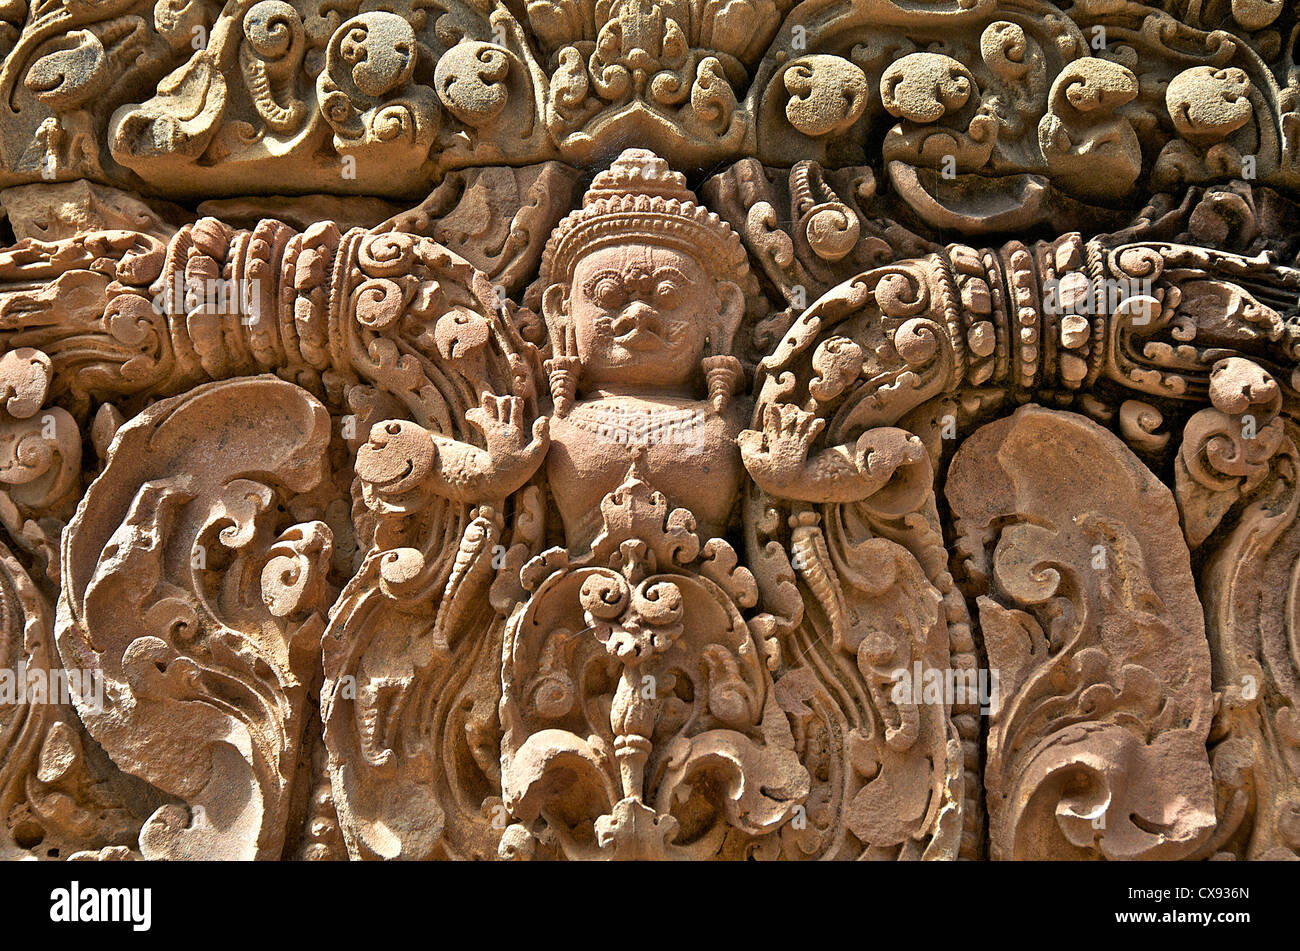 Banteay Srei dettagli tempio di Angkor Cambogia Foto Stock